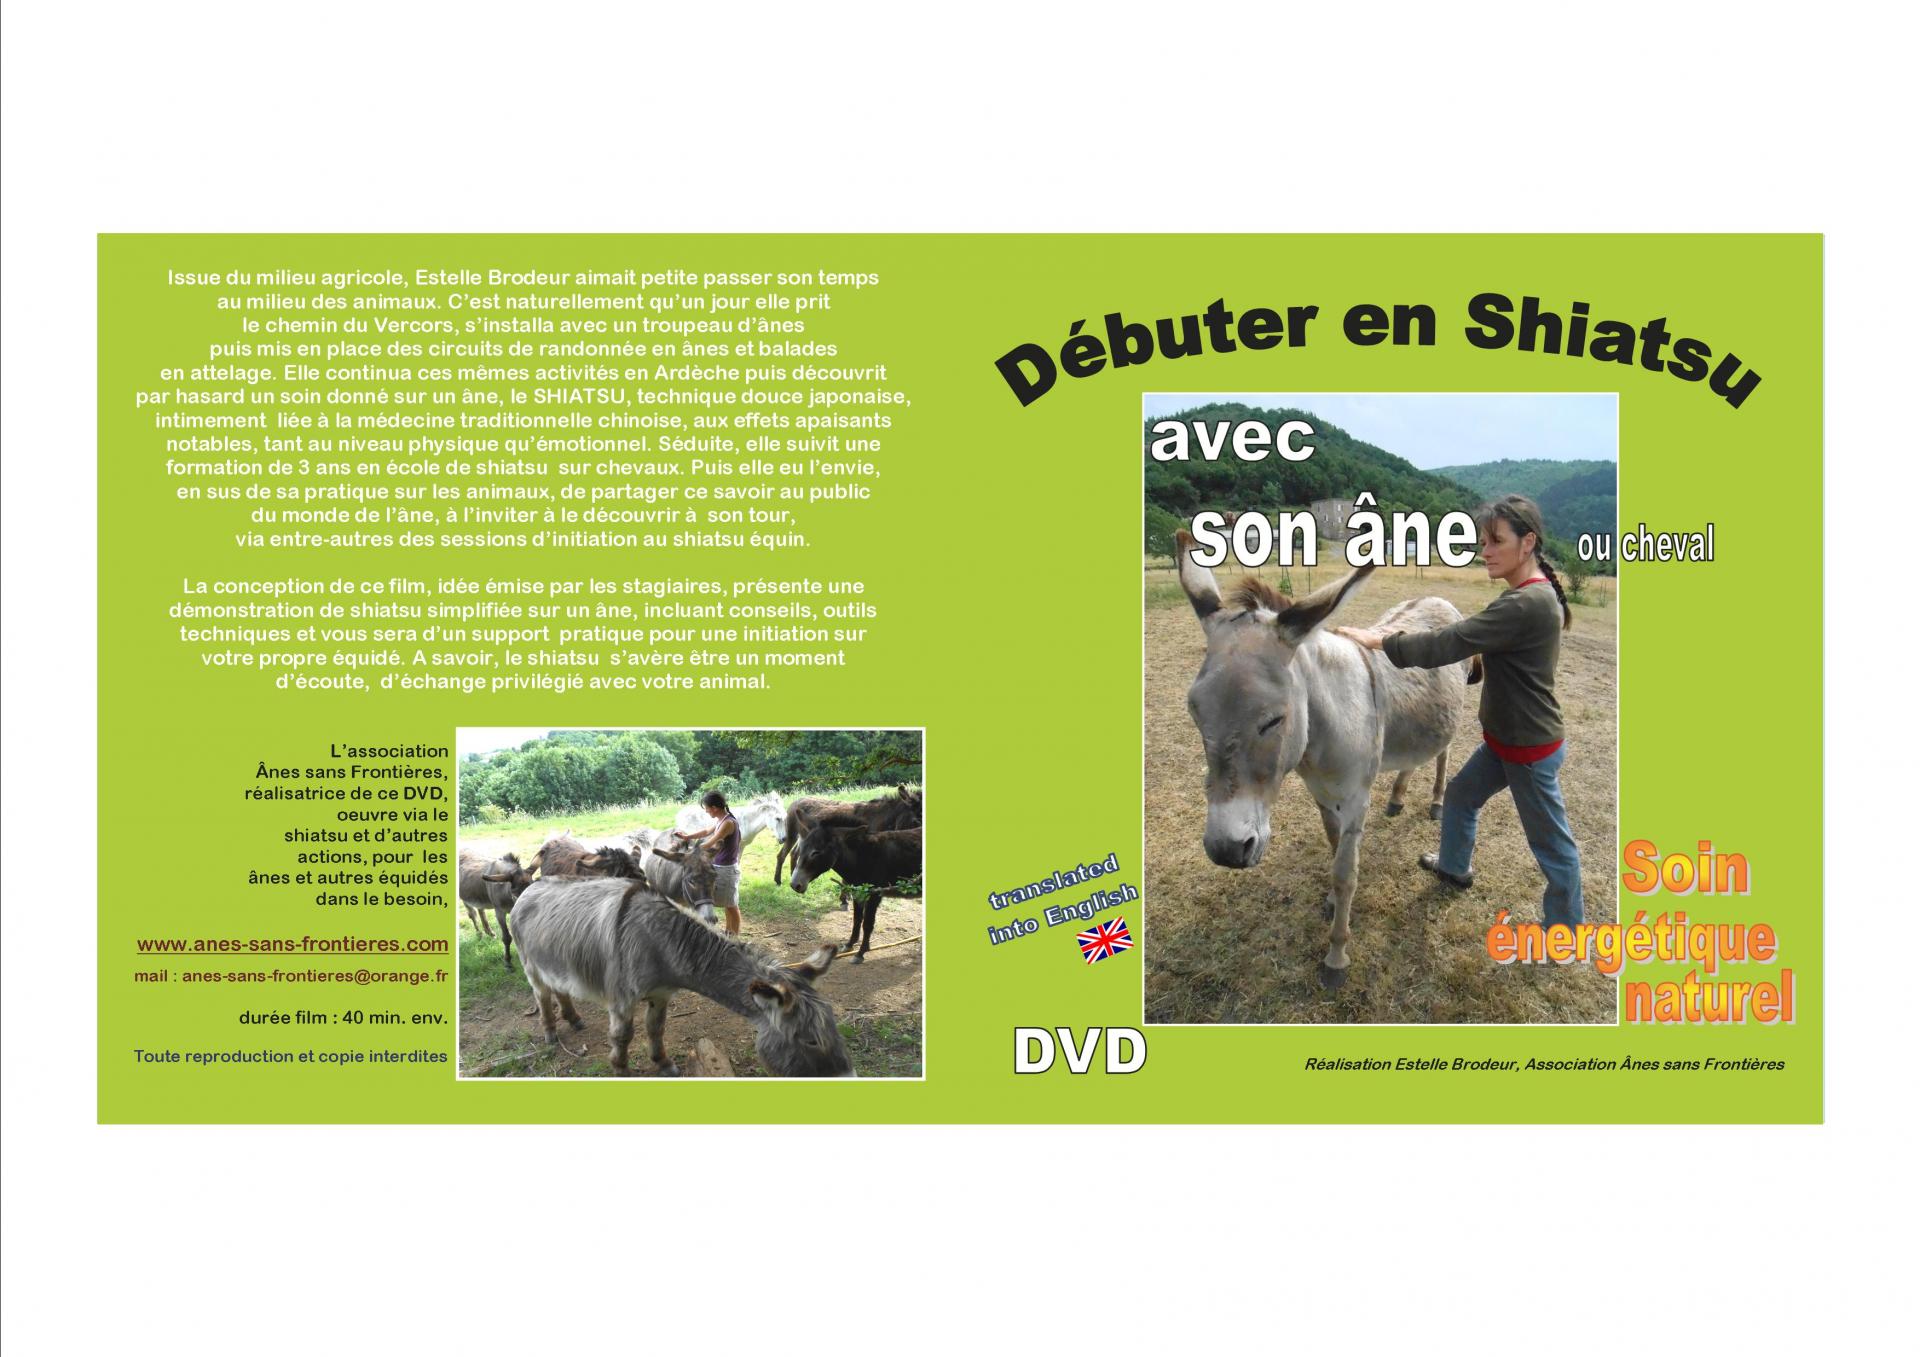 DVD Débuter en Shiatsu avec son âne ou cheval